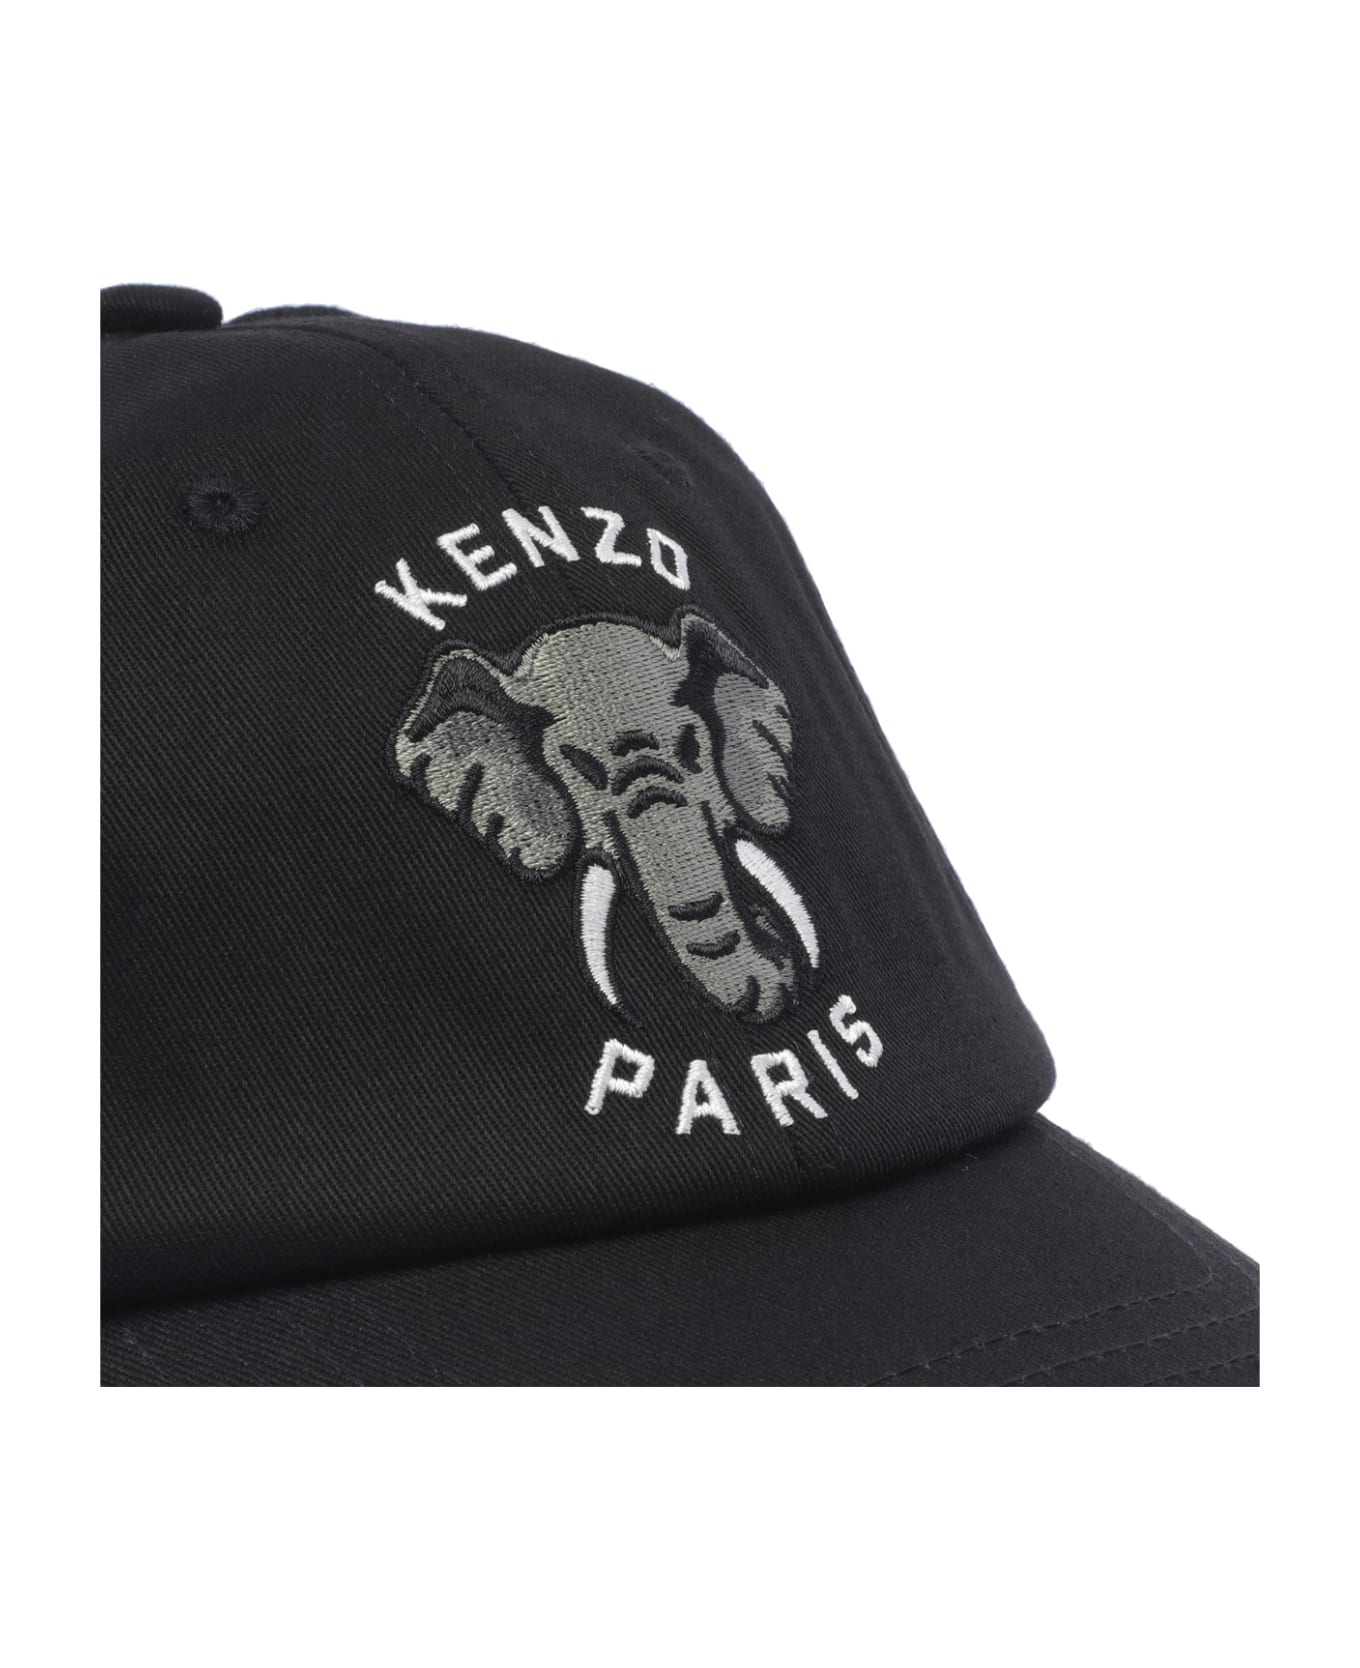 Kenzo Varsity Jungle Baseball Cap - Black